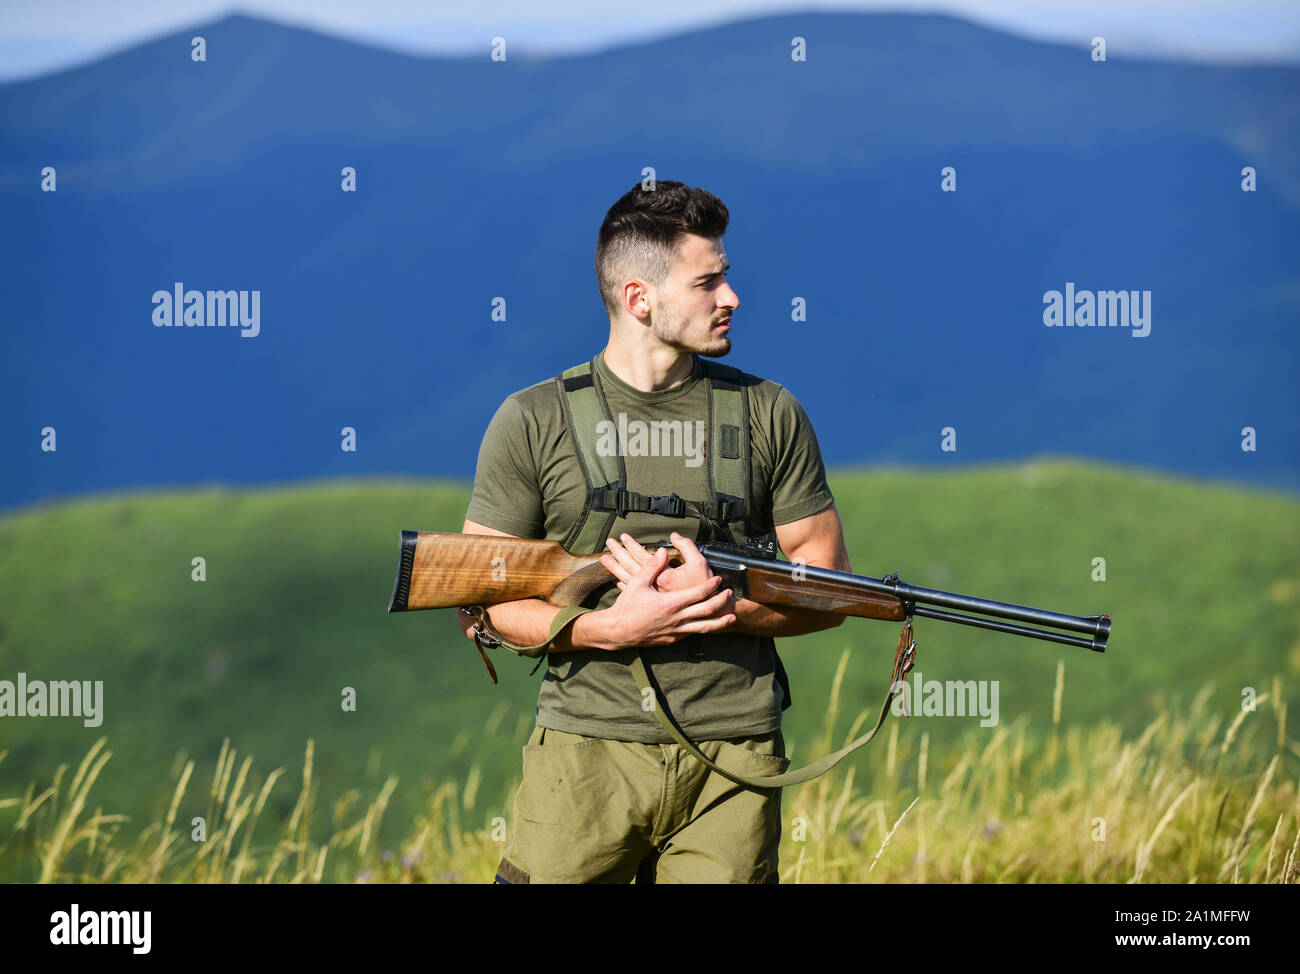 Feldjäger stiefel soldat -Fotos und -Bildmaterial in hoher Auflösung – Alamy